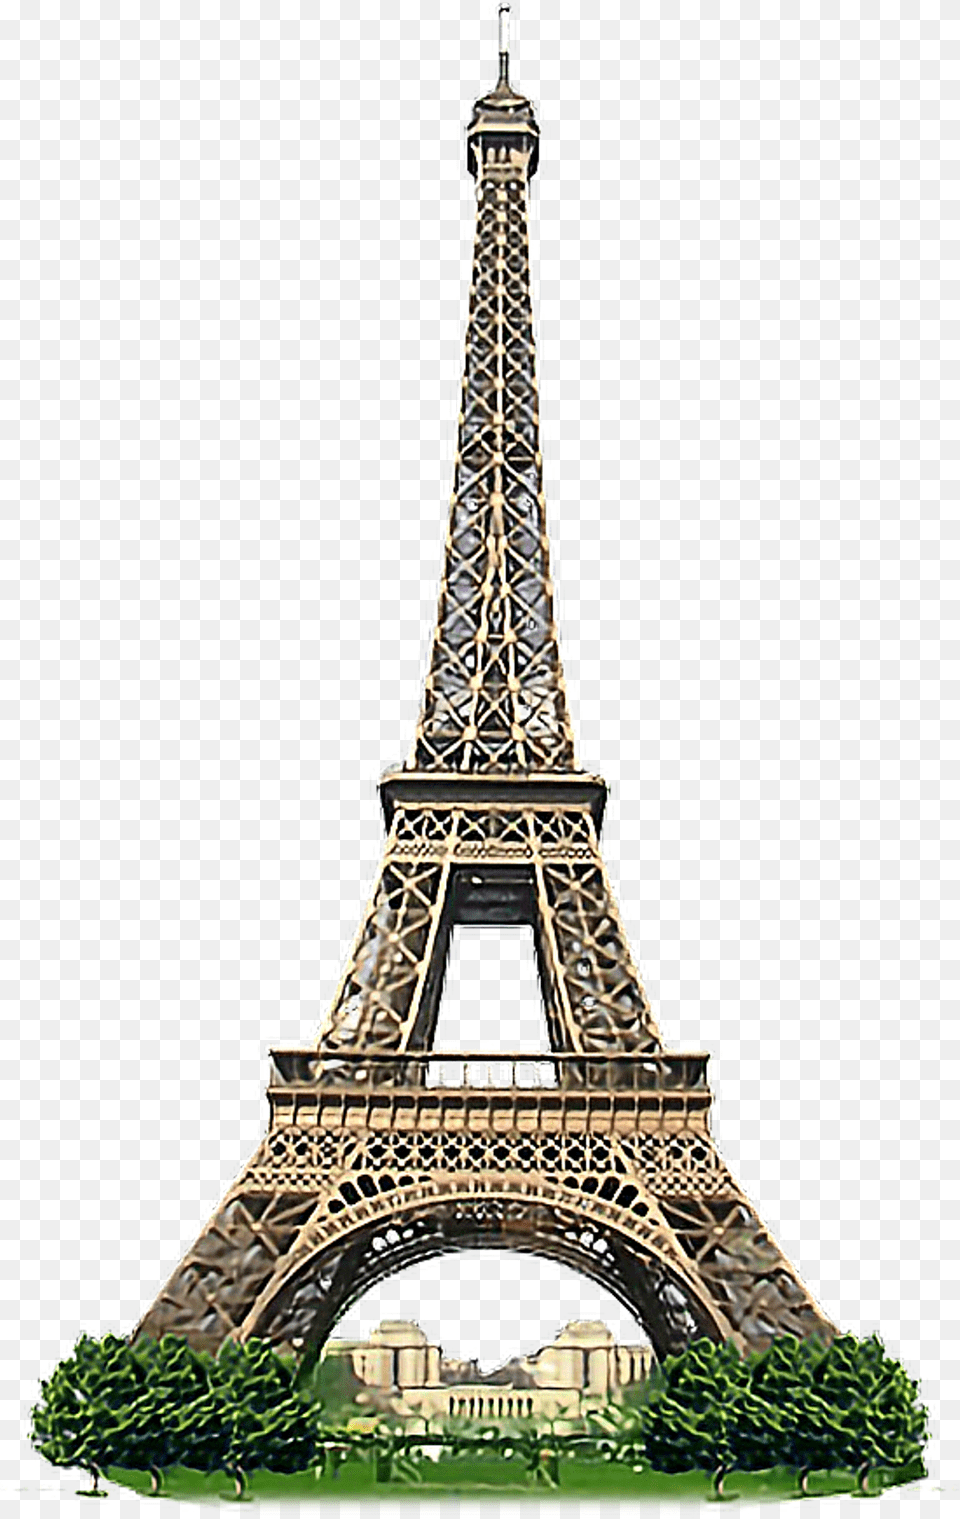 Paris Torre Eiffel Eiffel Tower, Architecture, Building, City Free Transparent Png